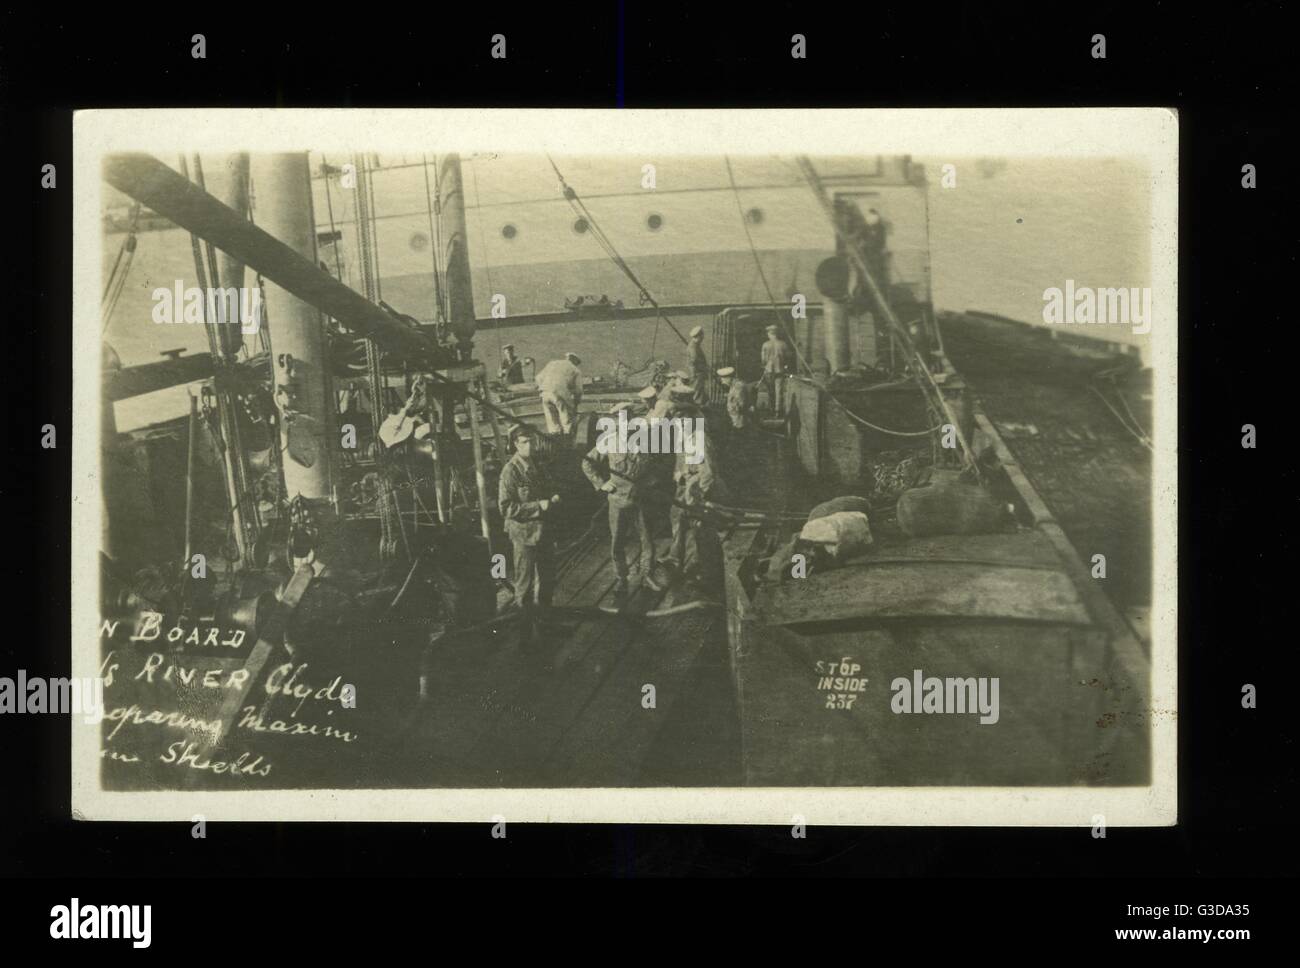 SS River Clyde, britischer Collier im Jahr WW1 Stockfoto